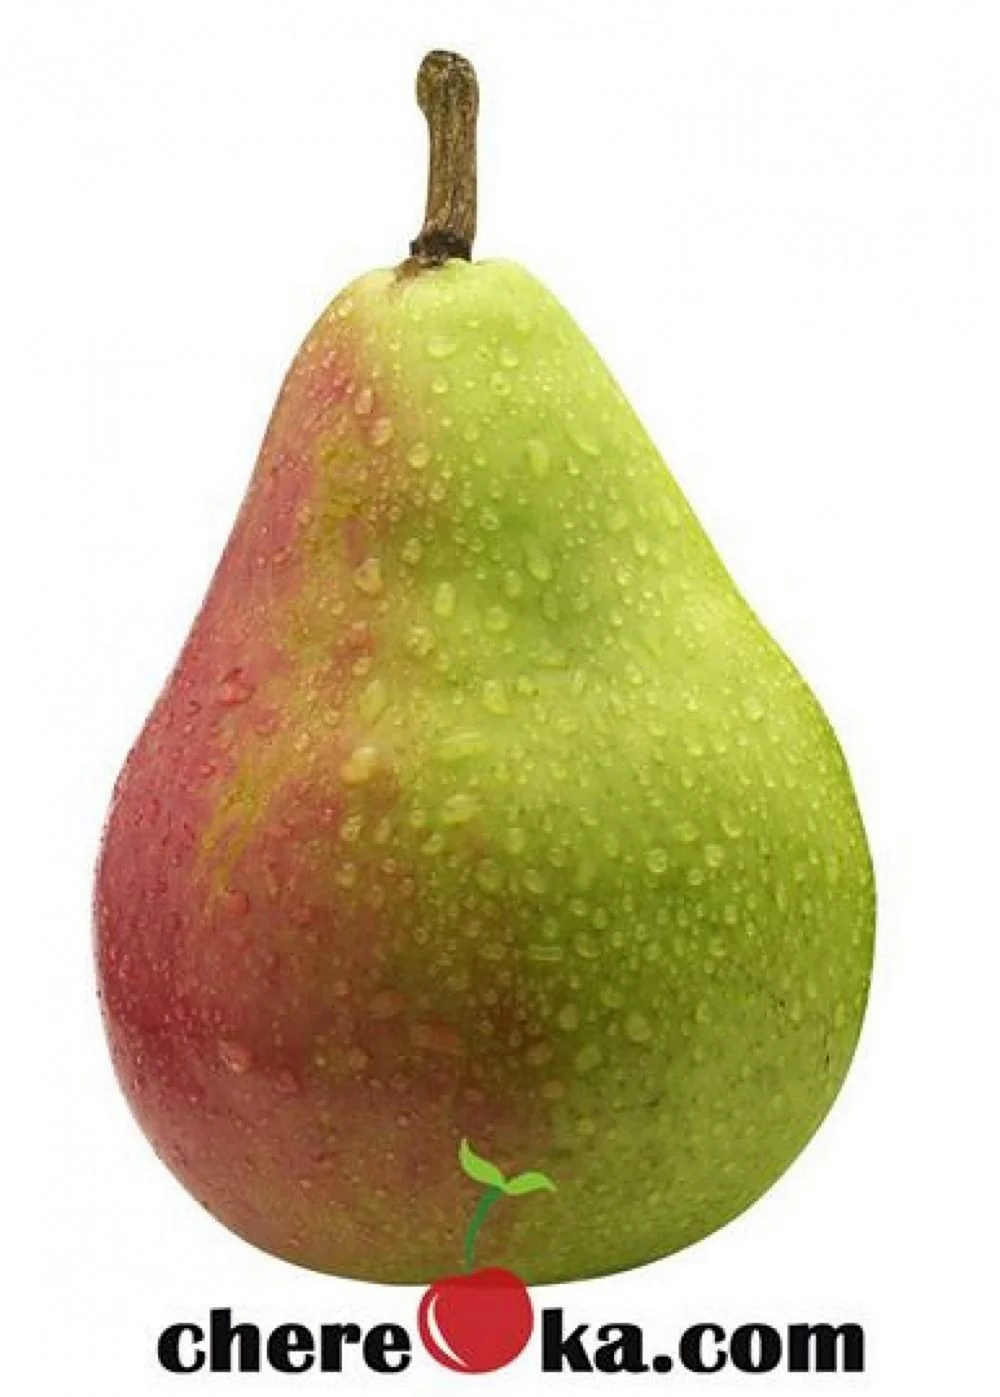 Pear Пэар - груша